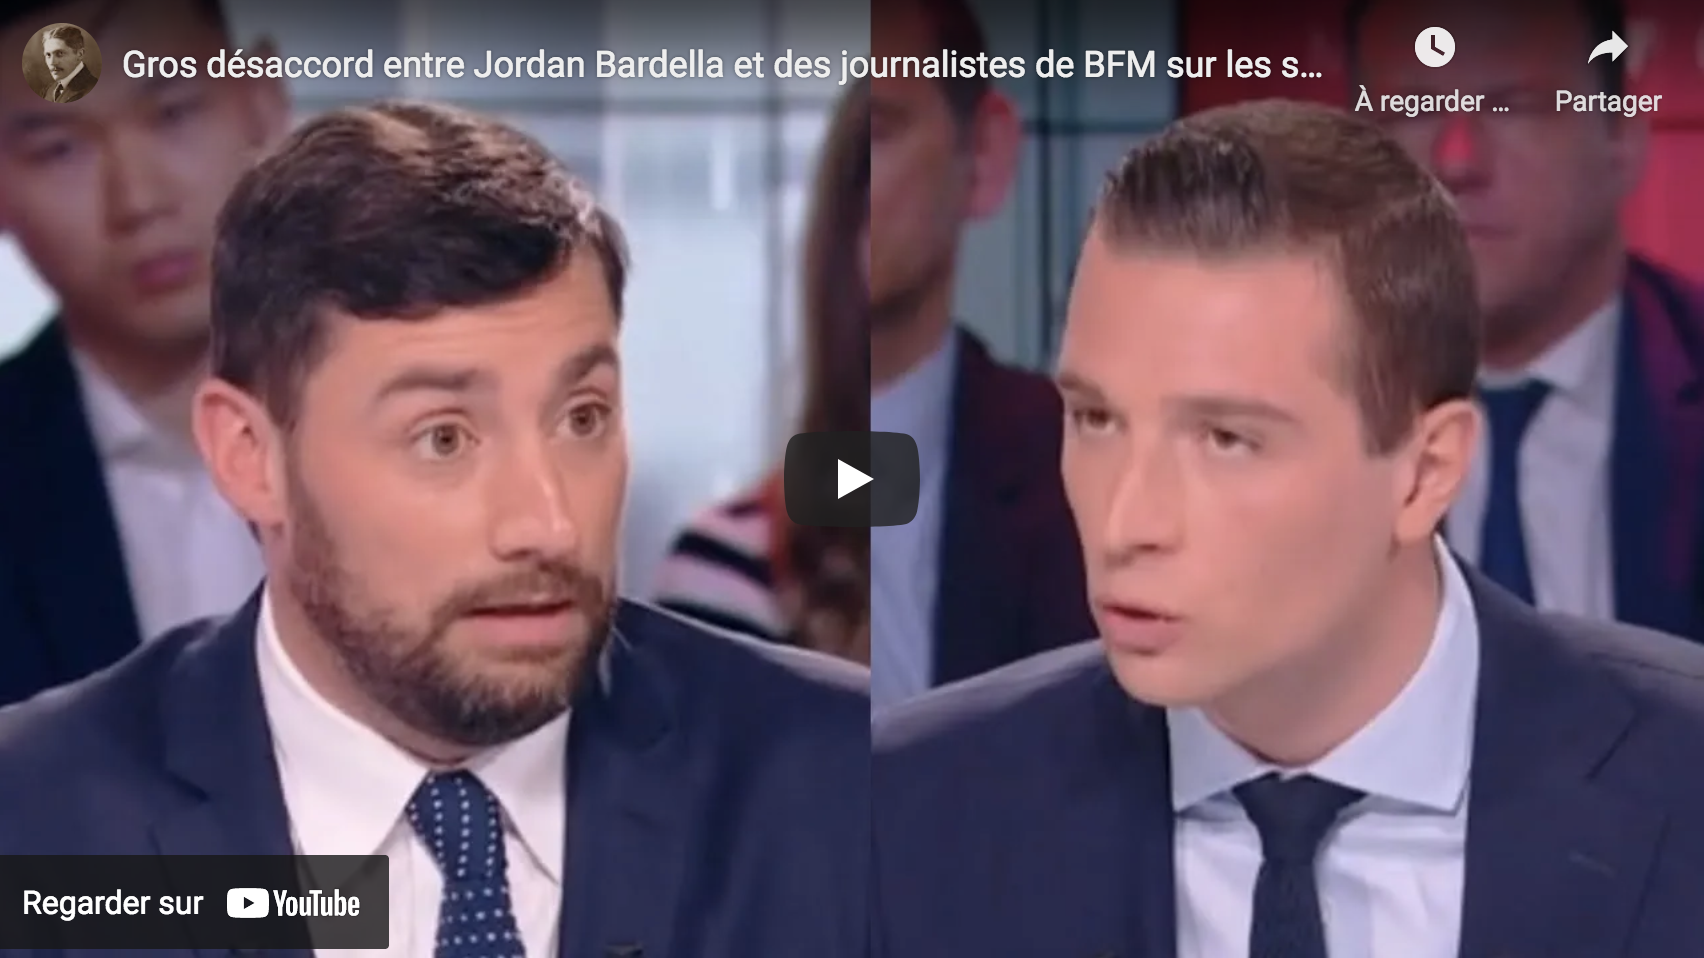 Gros désaccord entre Jordan Bardella et des journalistes de BFM TV sur les sanctions contre la Russie (VIDÉO)